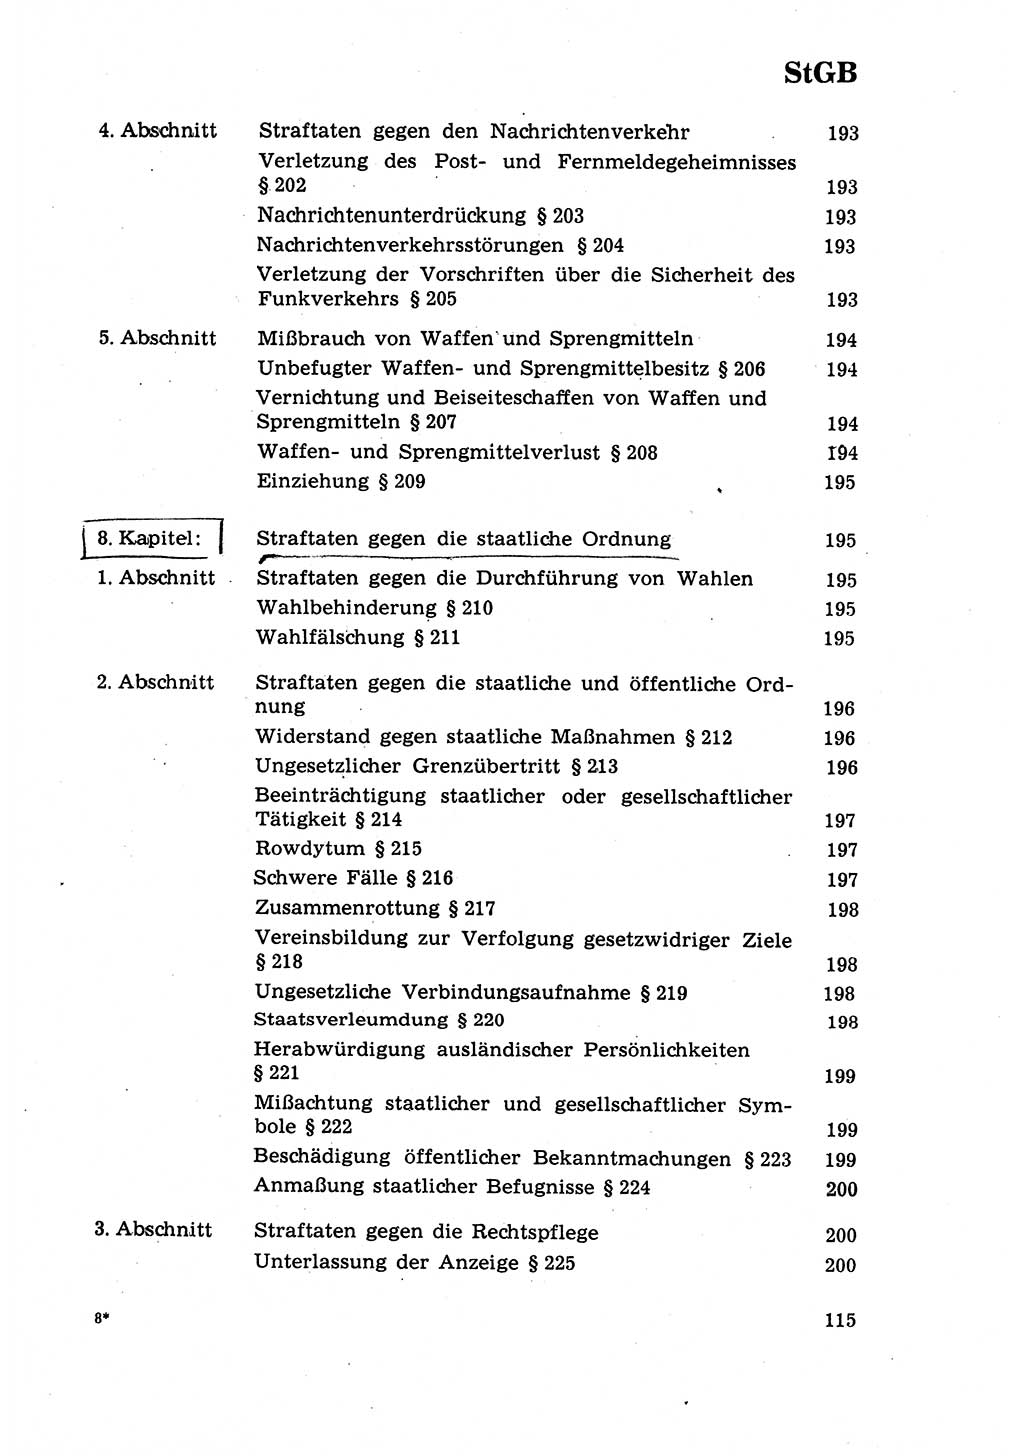 Strafrecht [Deutsche Demokratische Republik (DDR)] 1968, Seite 115 (Strafr. DDR 1968, S. 115)